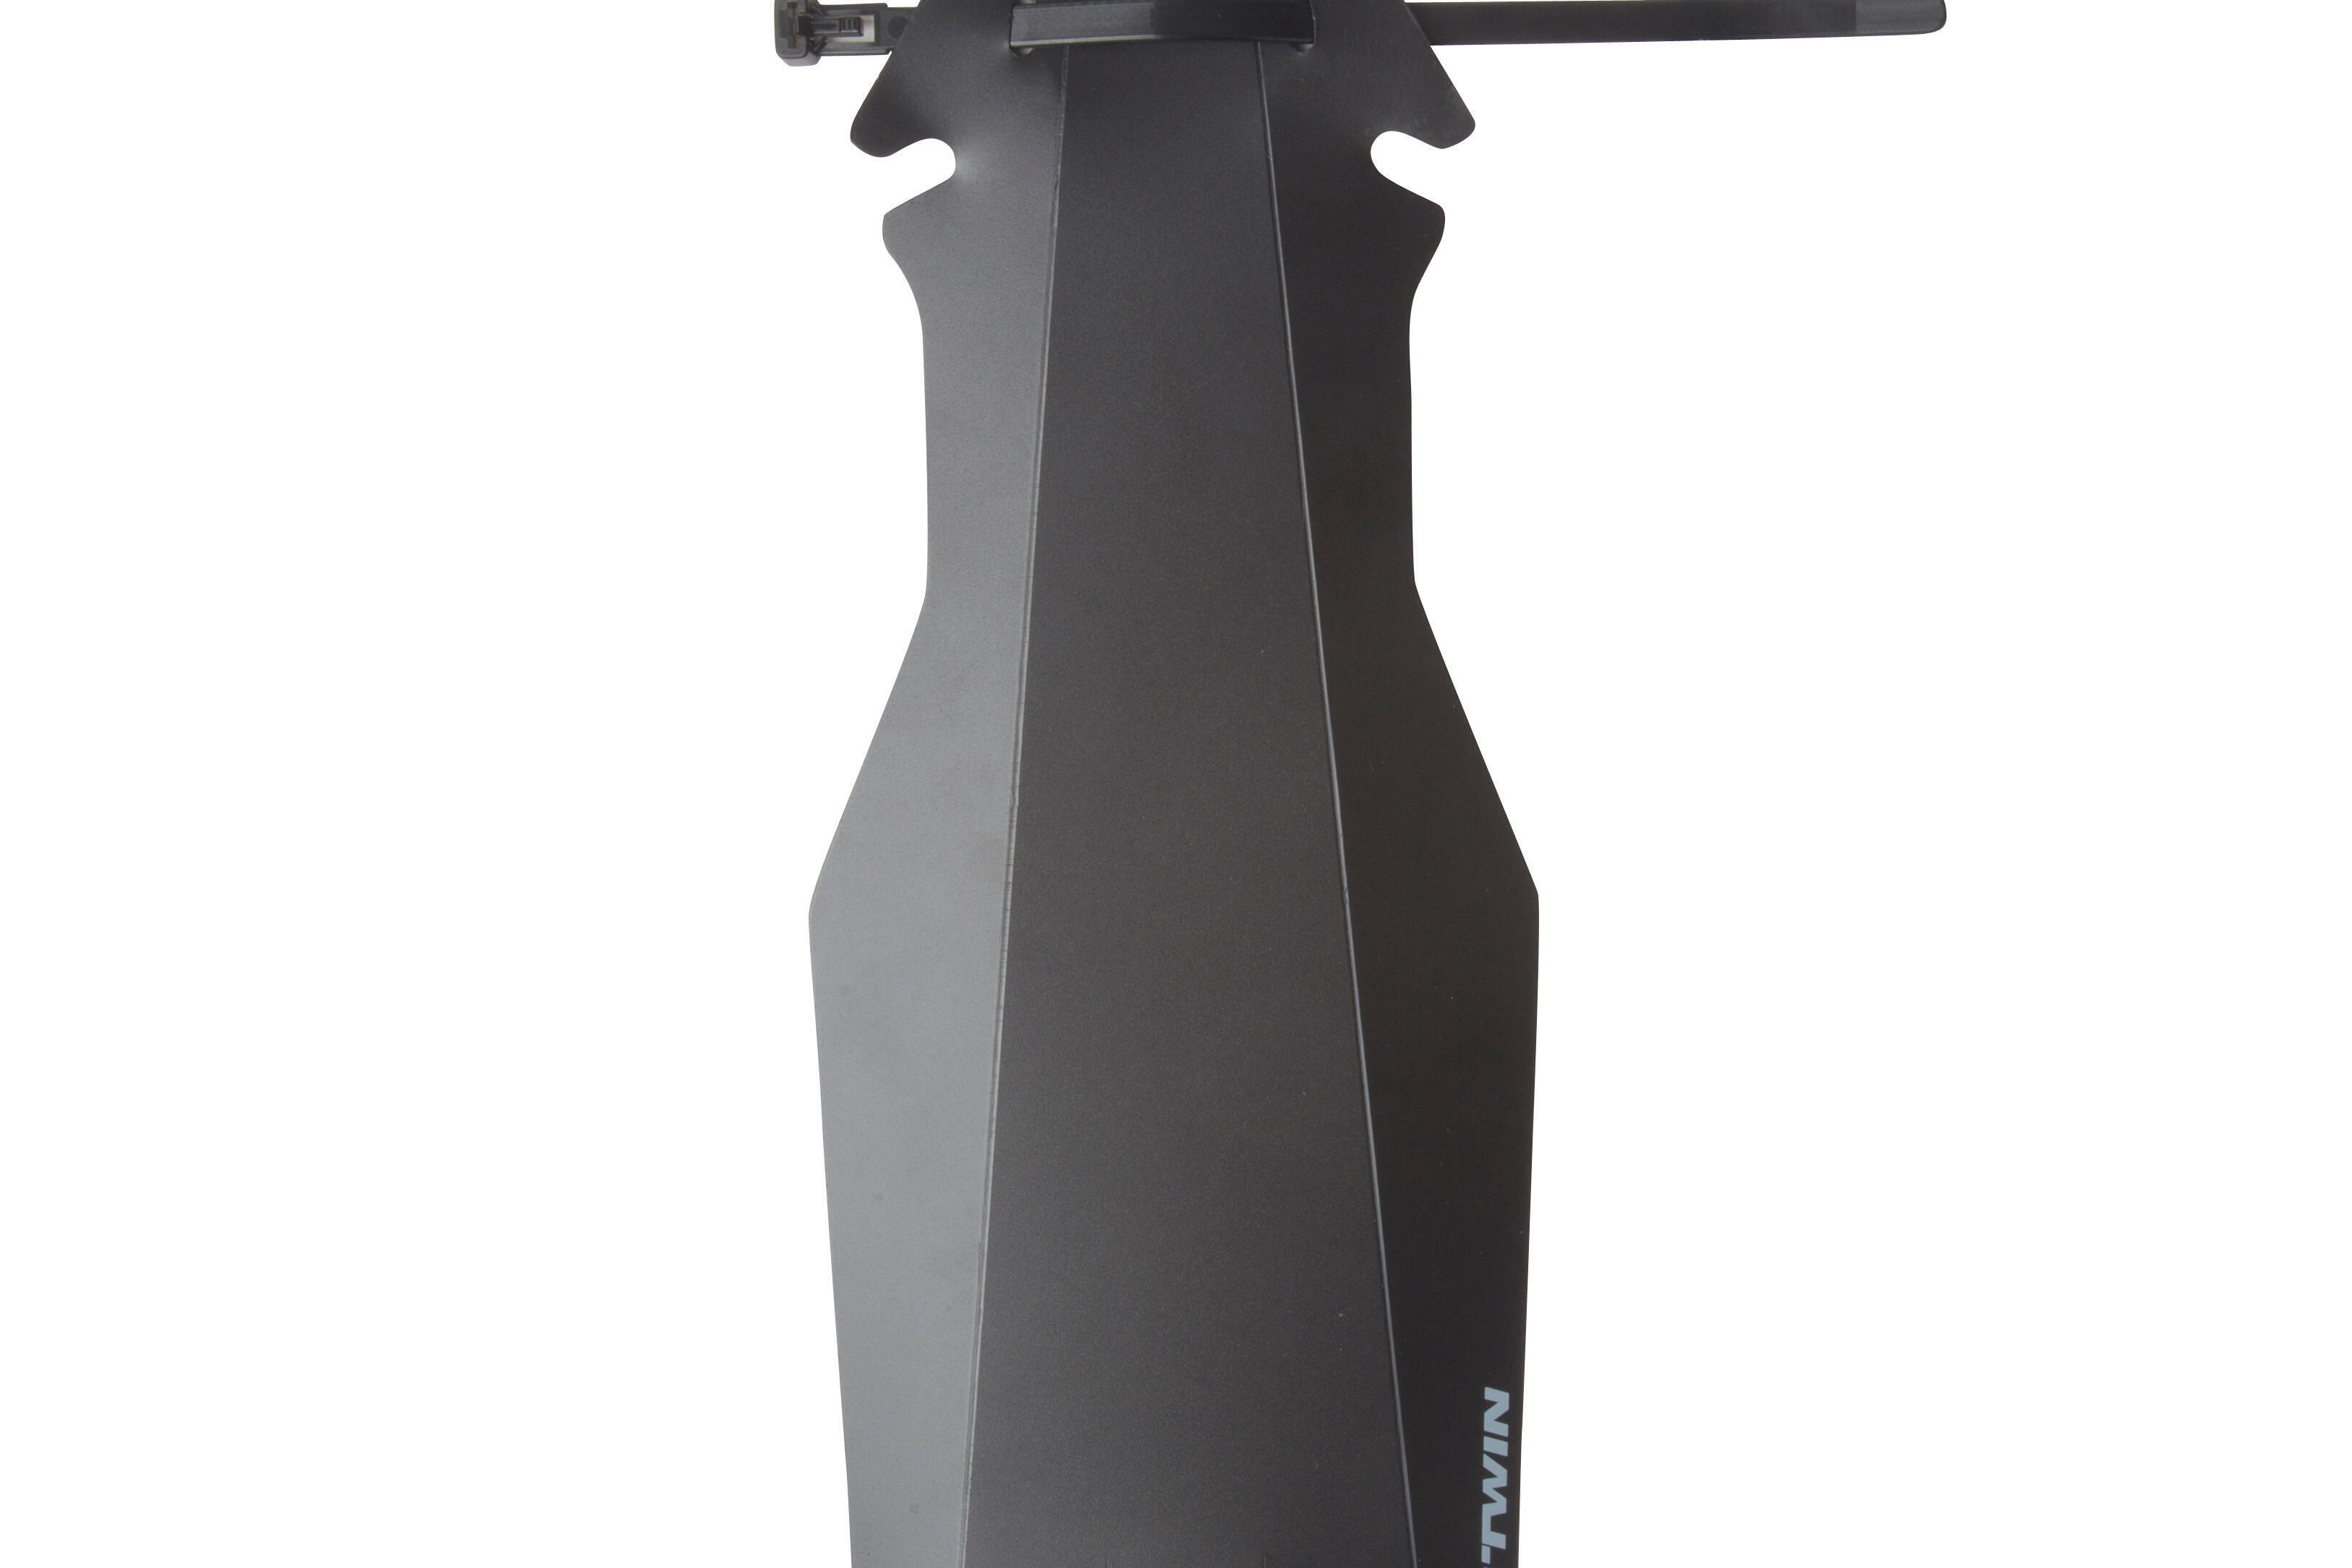 VTT ROCKRIDER ST 100 garde boue arrière flash compatible